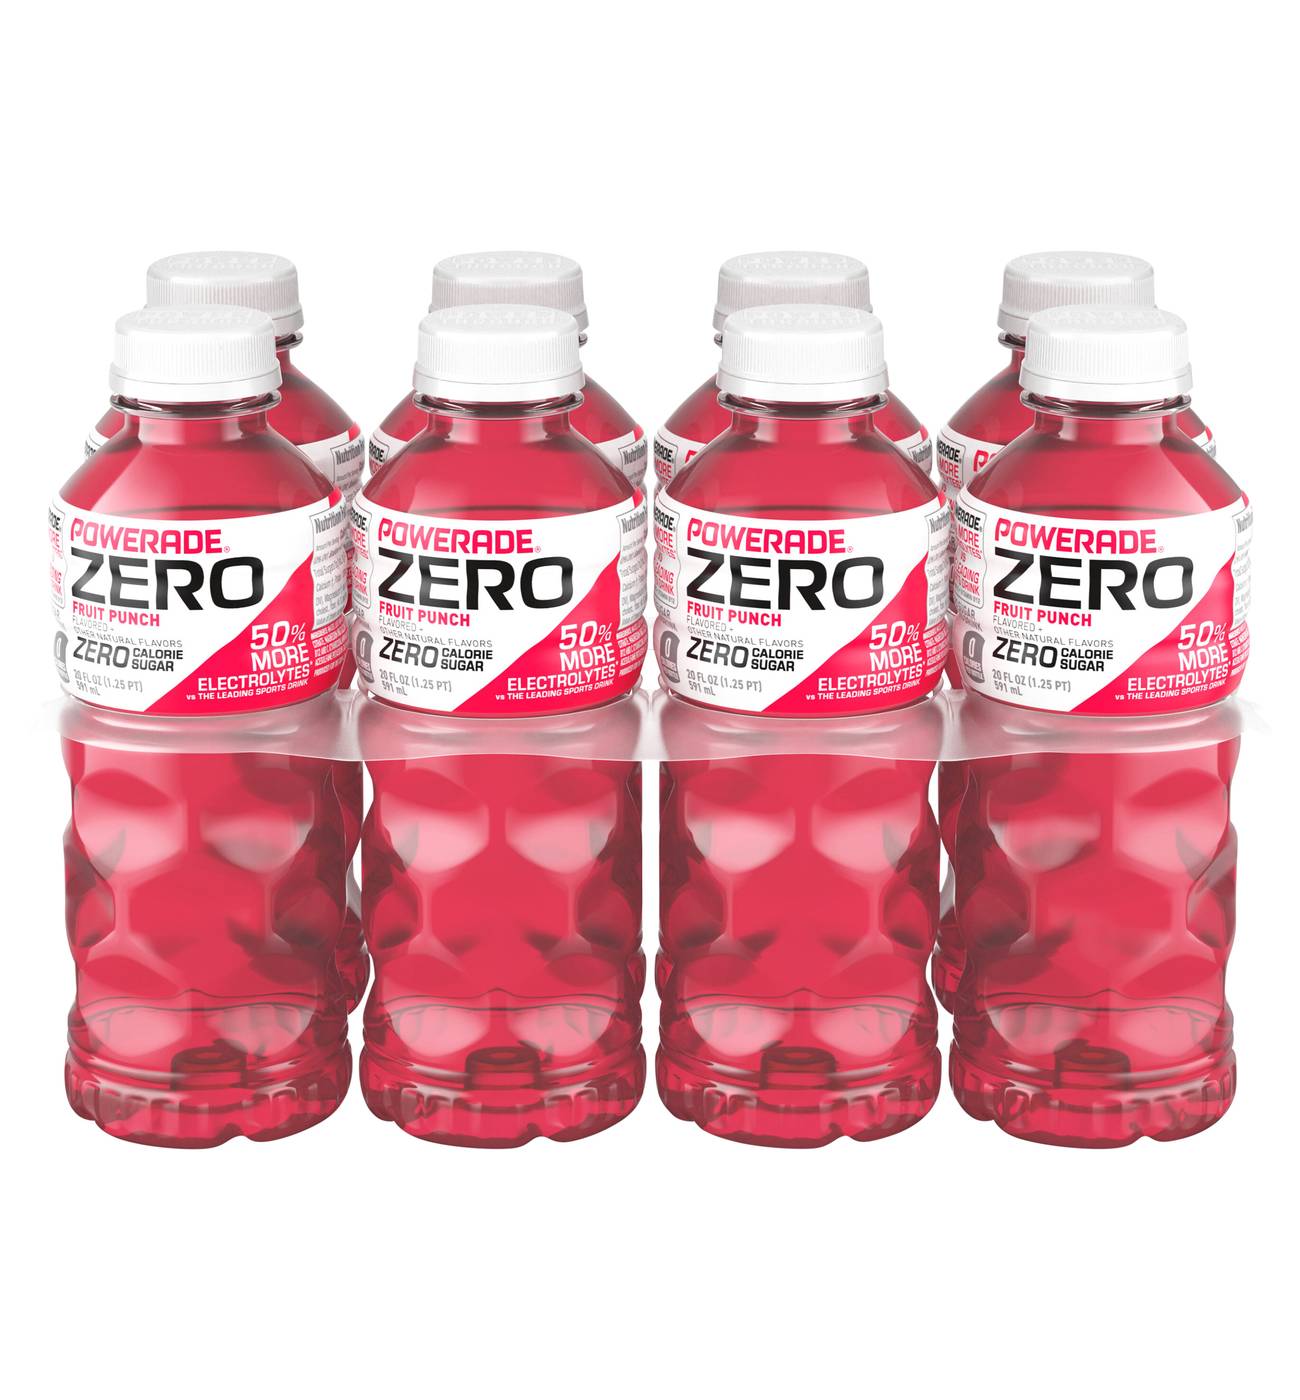 Powerade Zero Fruit Punch Sports Drink 8 pk Bottles; image 1 of 2